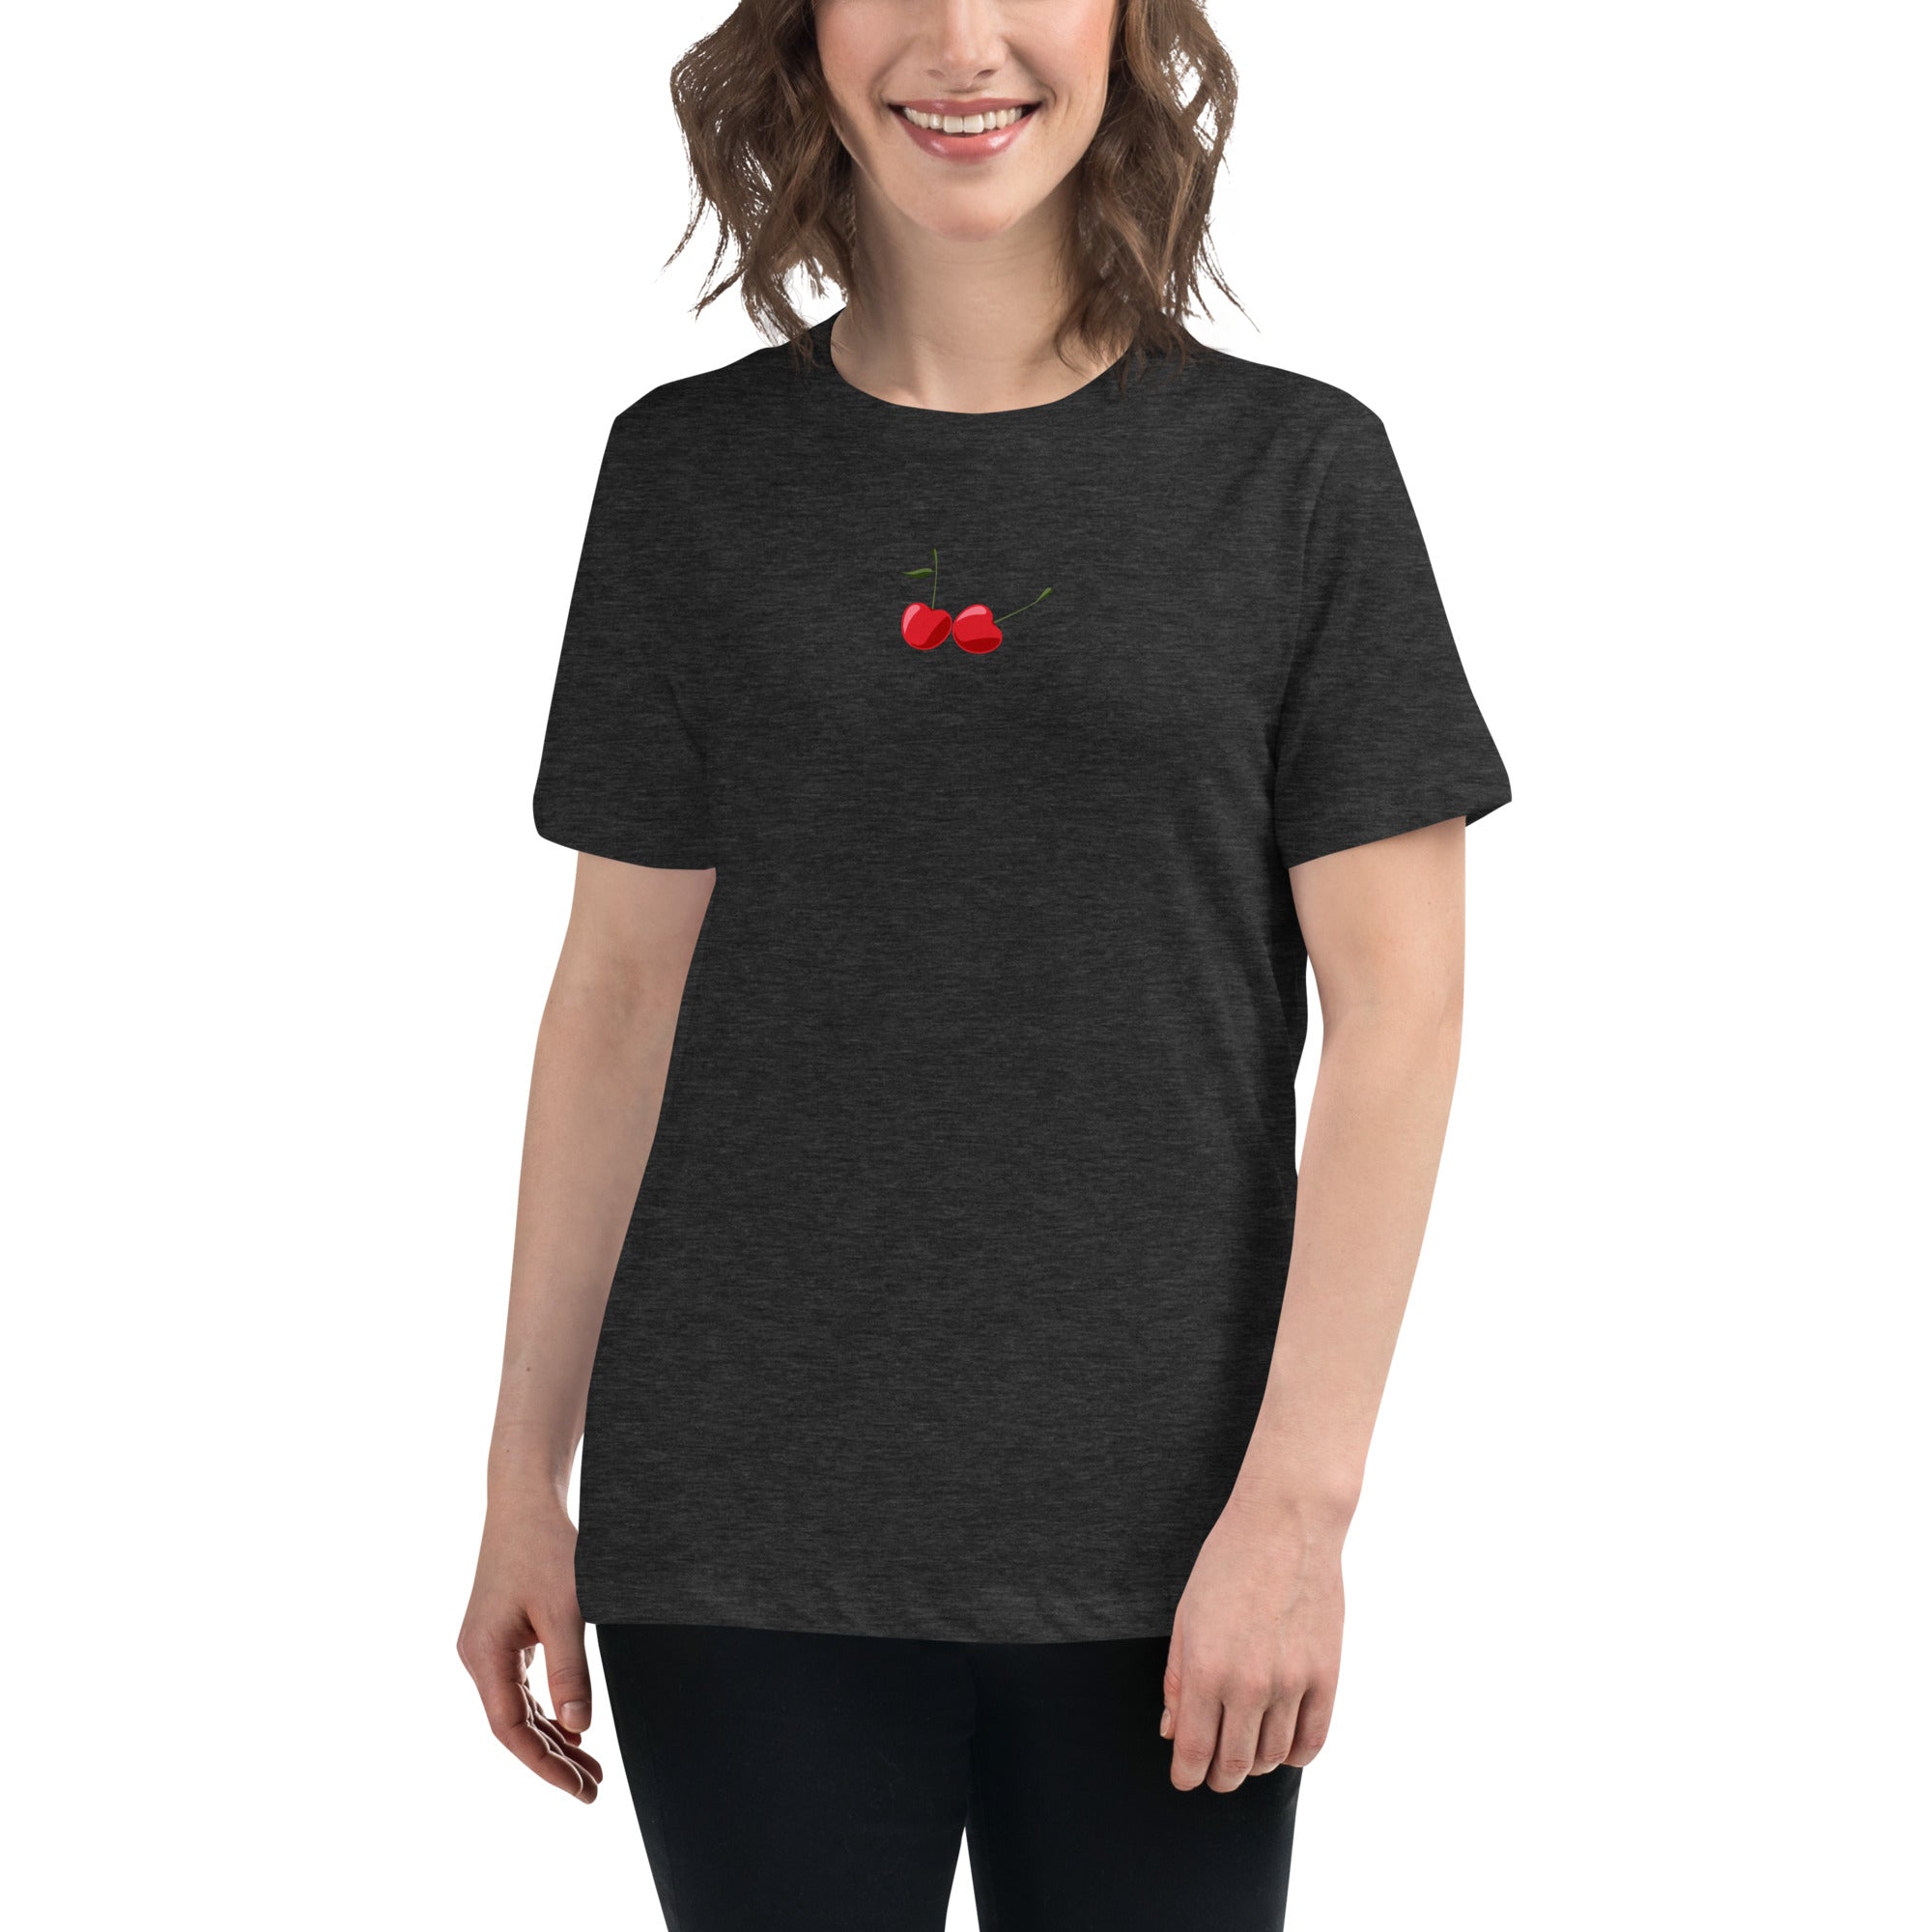 Cherries - Women's T-shirt